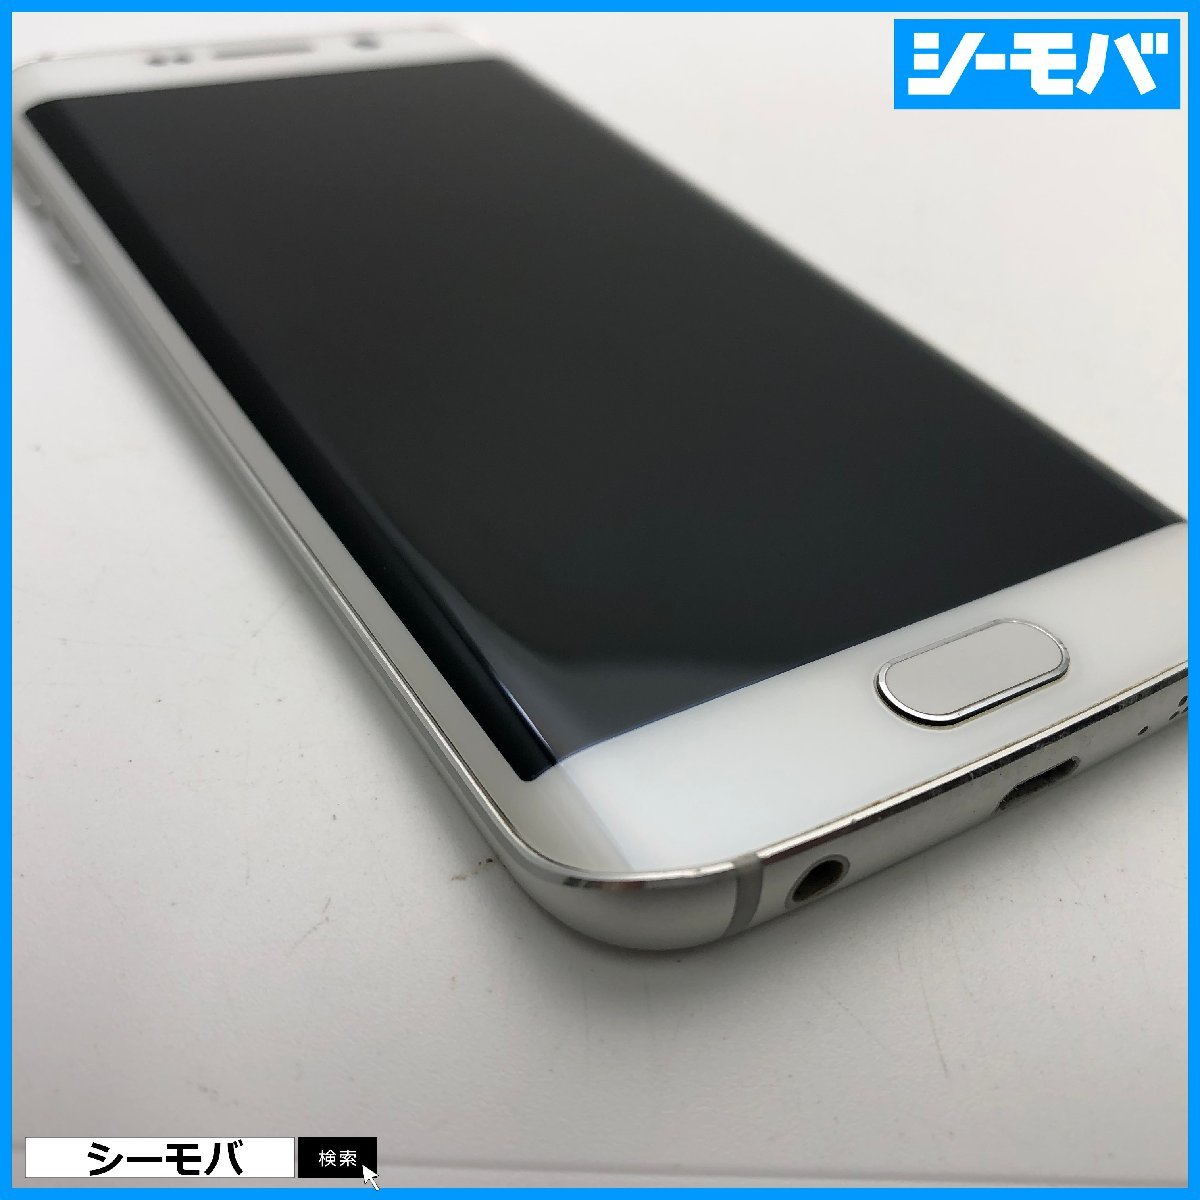 スマホ Galaxy S6 edge 404SC 32GB softbank ホワイト 美品 ソフトバンク android アンドロイド RUUN12934_画像5